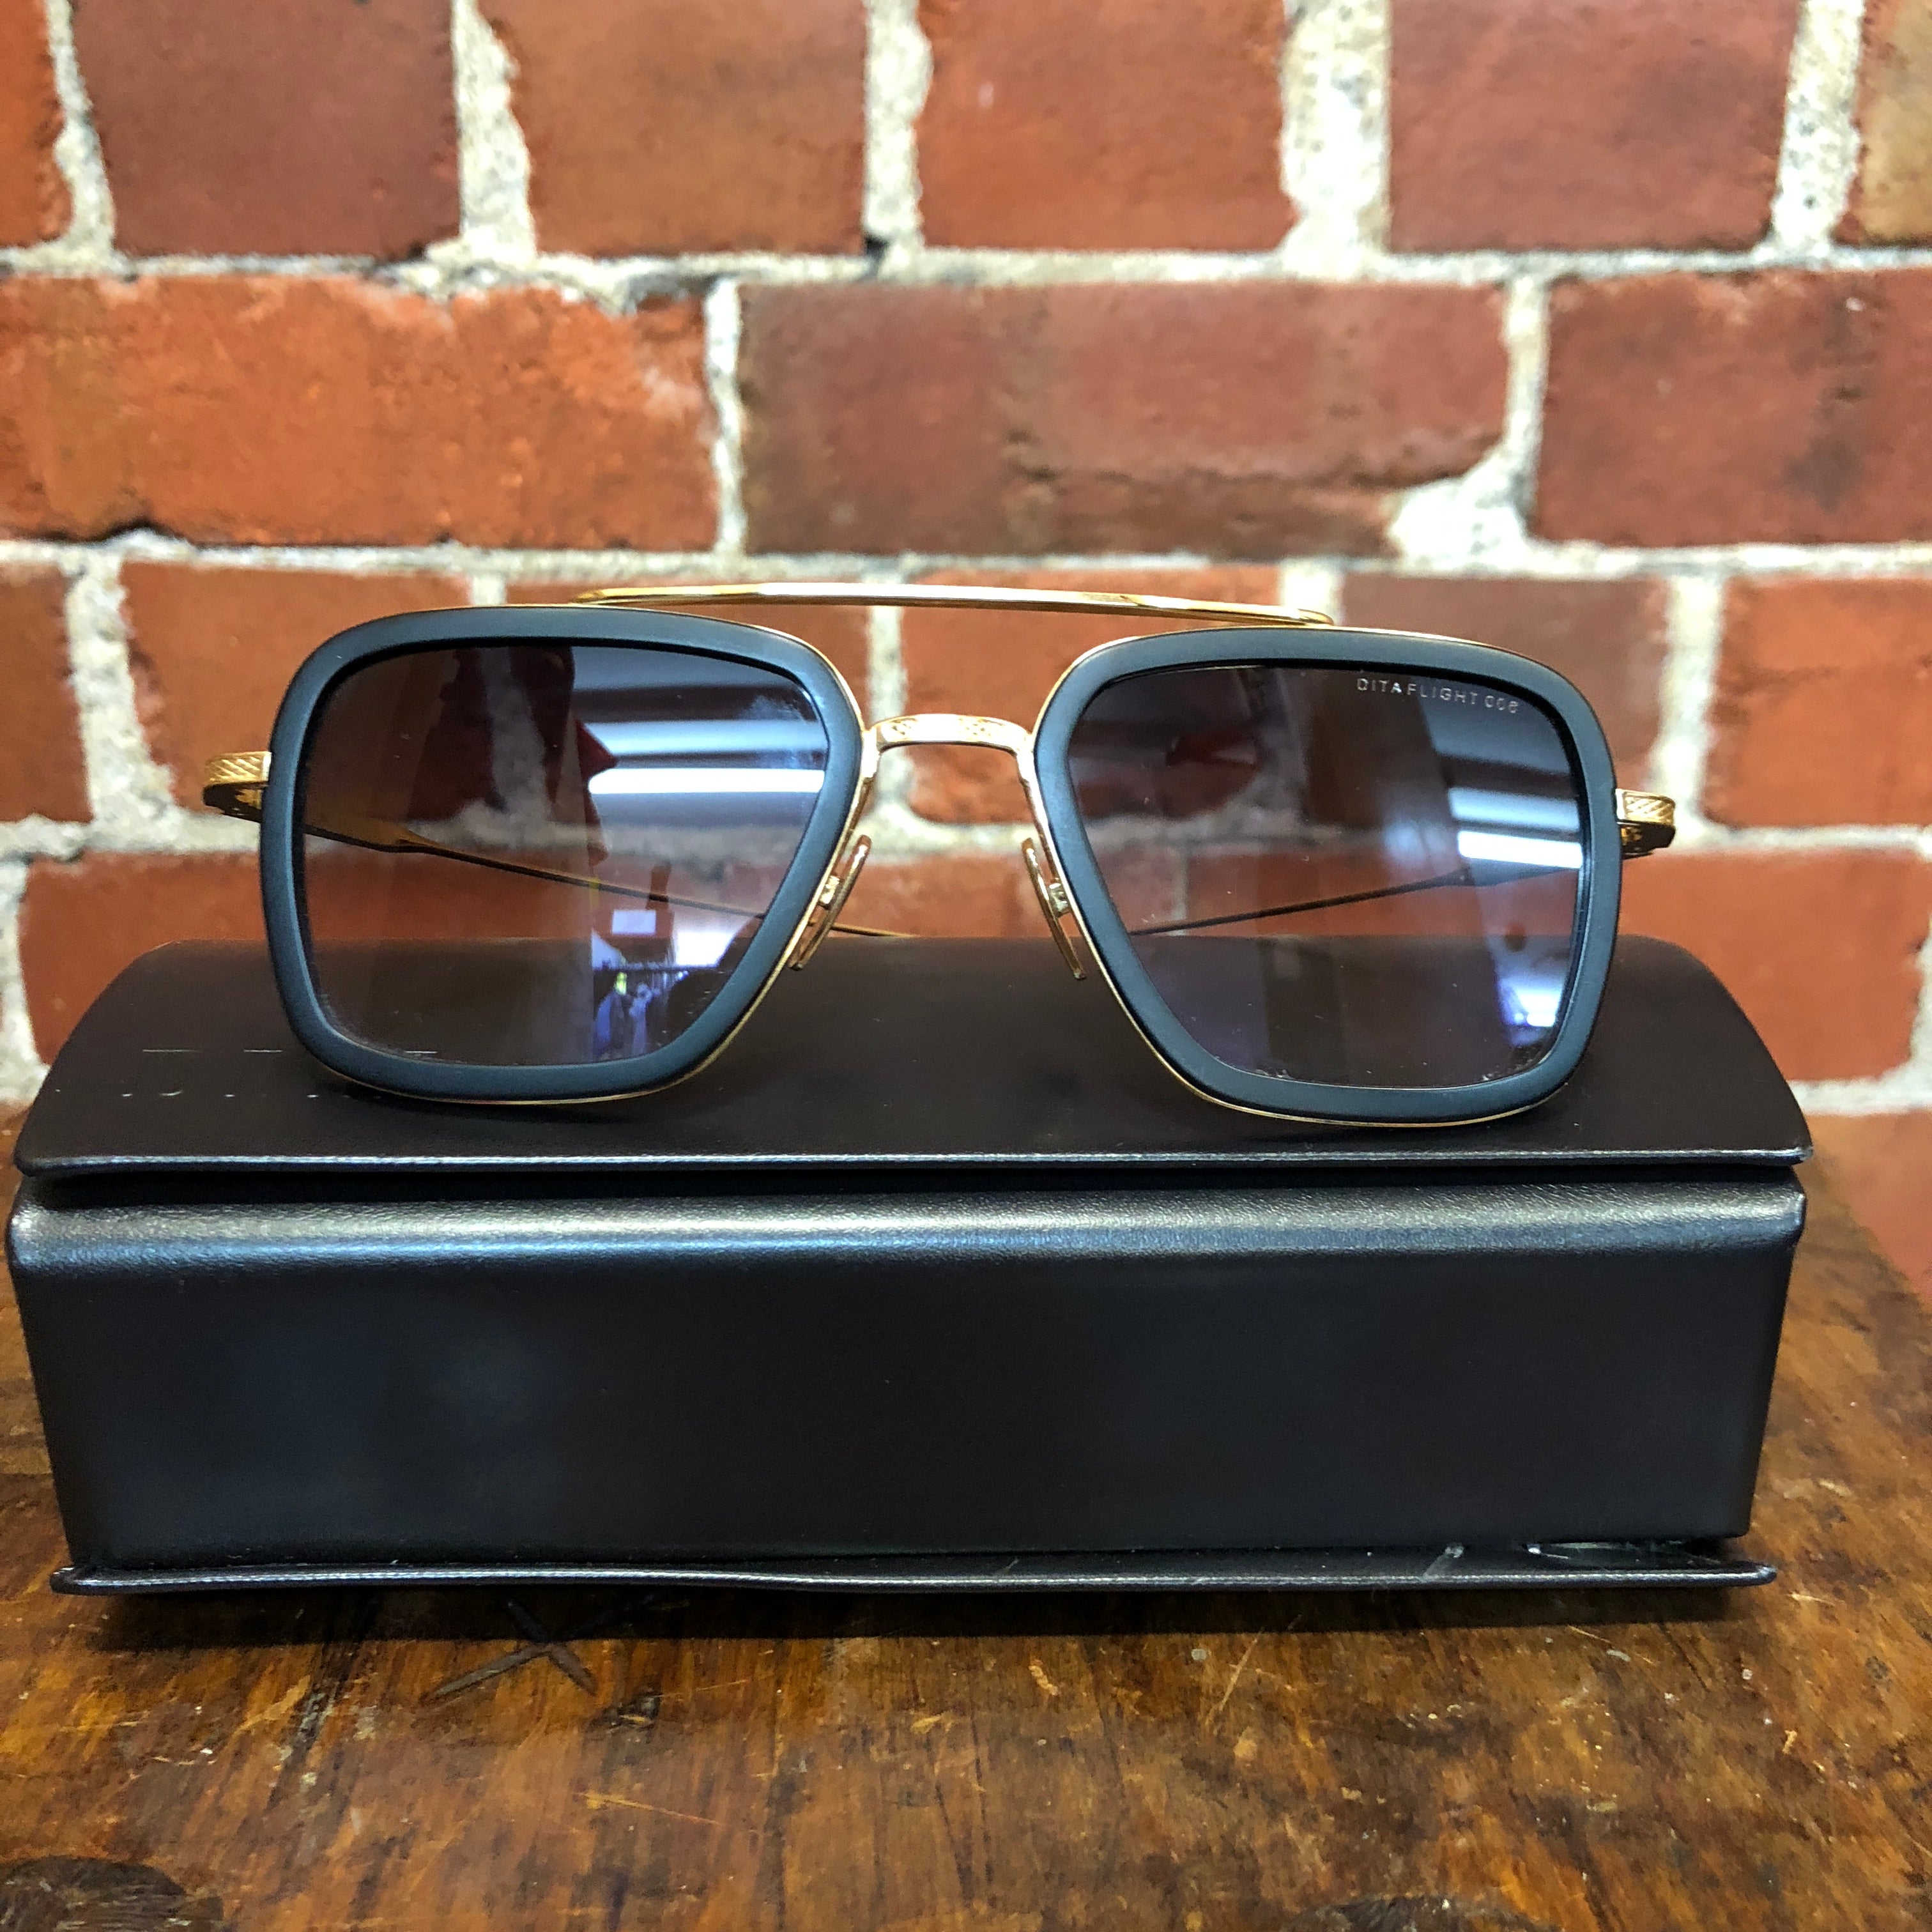 DITA Australian designer sunglasses